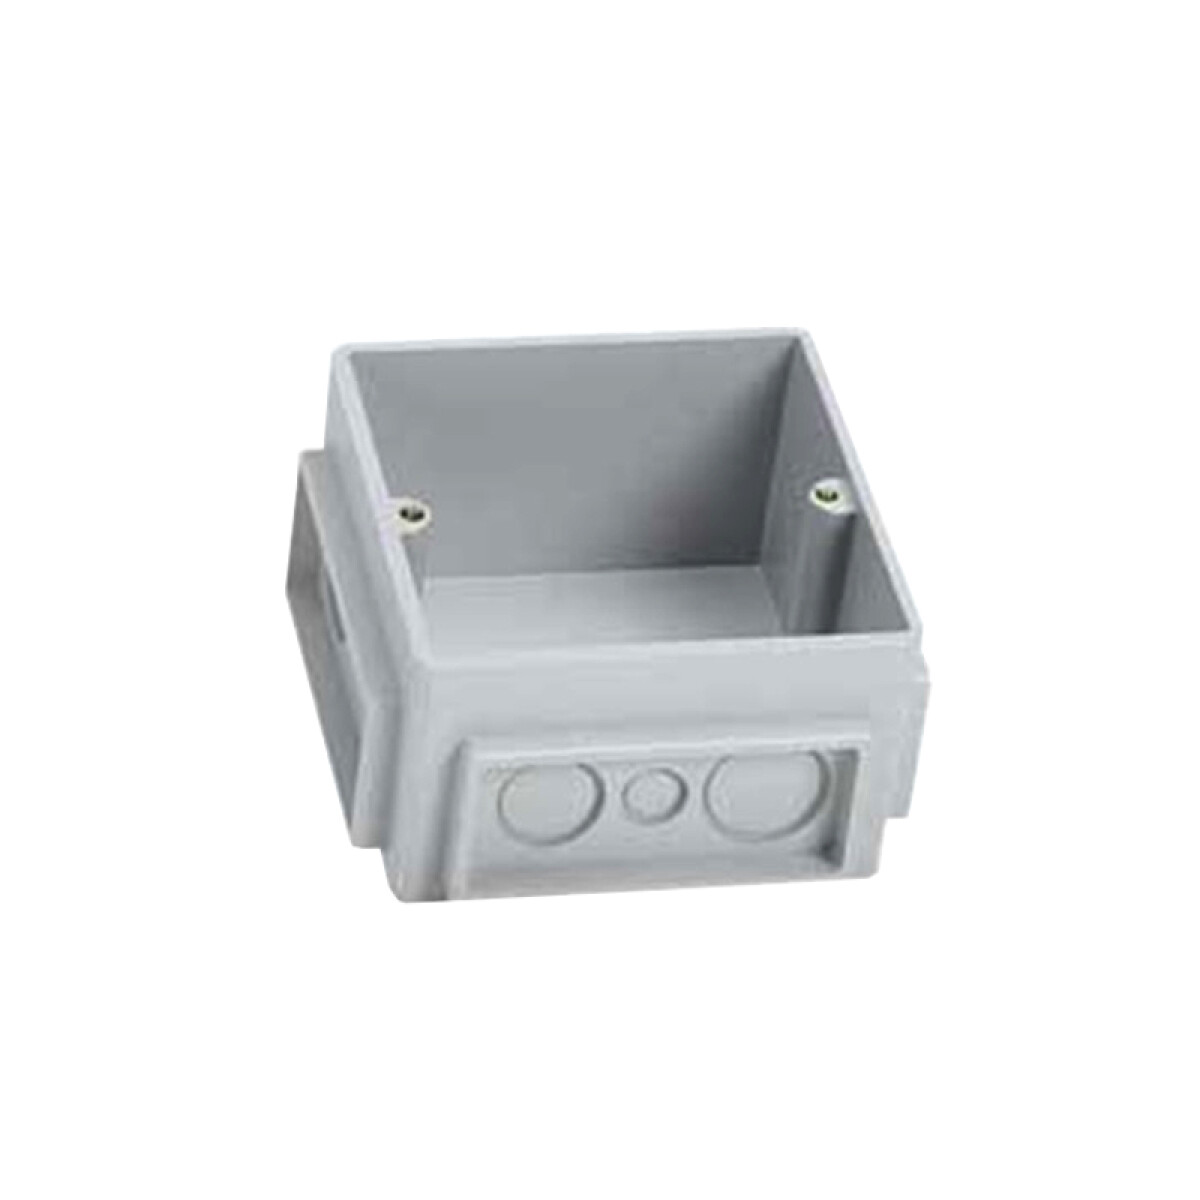 Caja PVC s/tapa de embutir para Pop-Up 3 módulos - LJ3808 